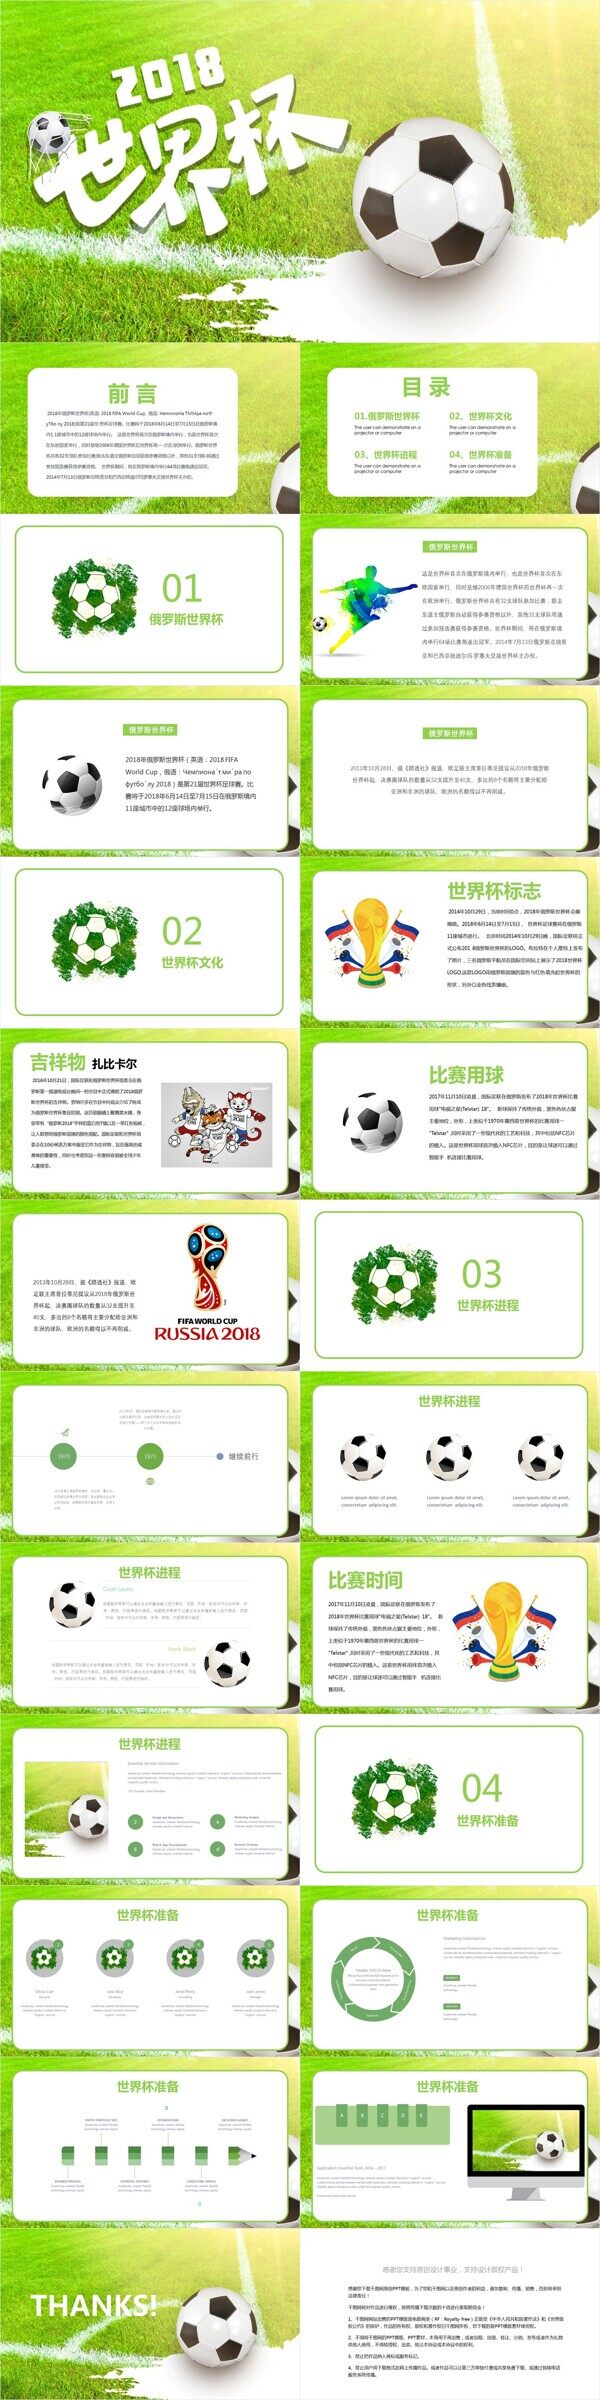 清新创意世界杯活动策划PPT模板